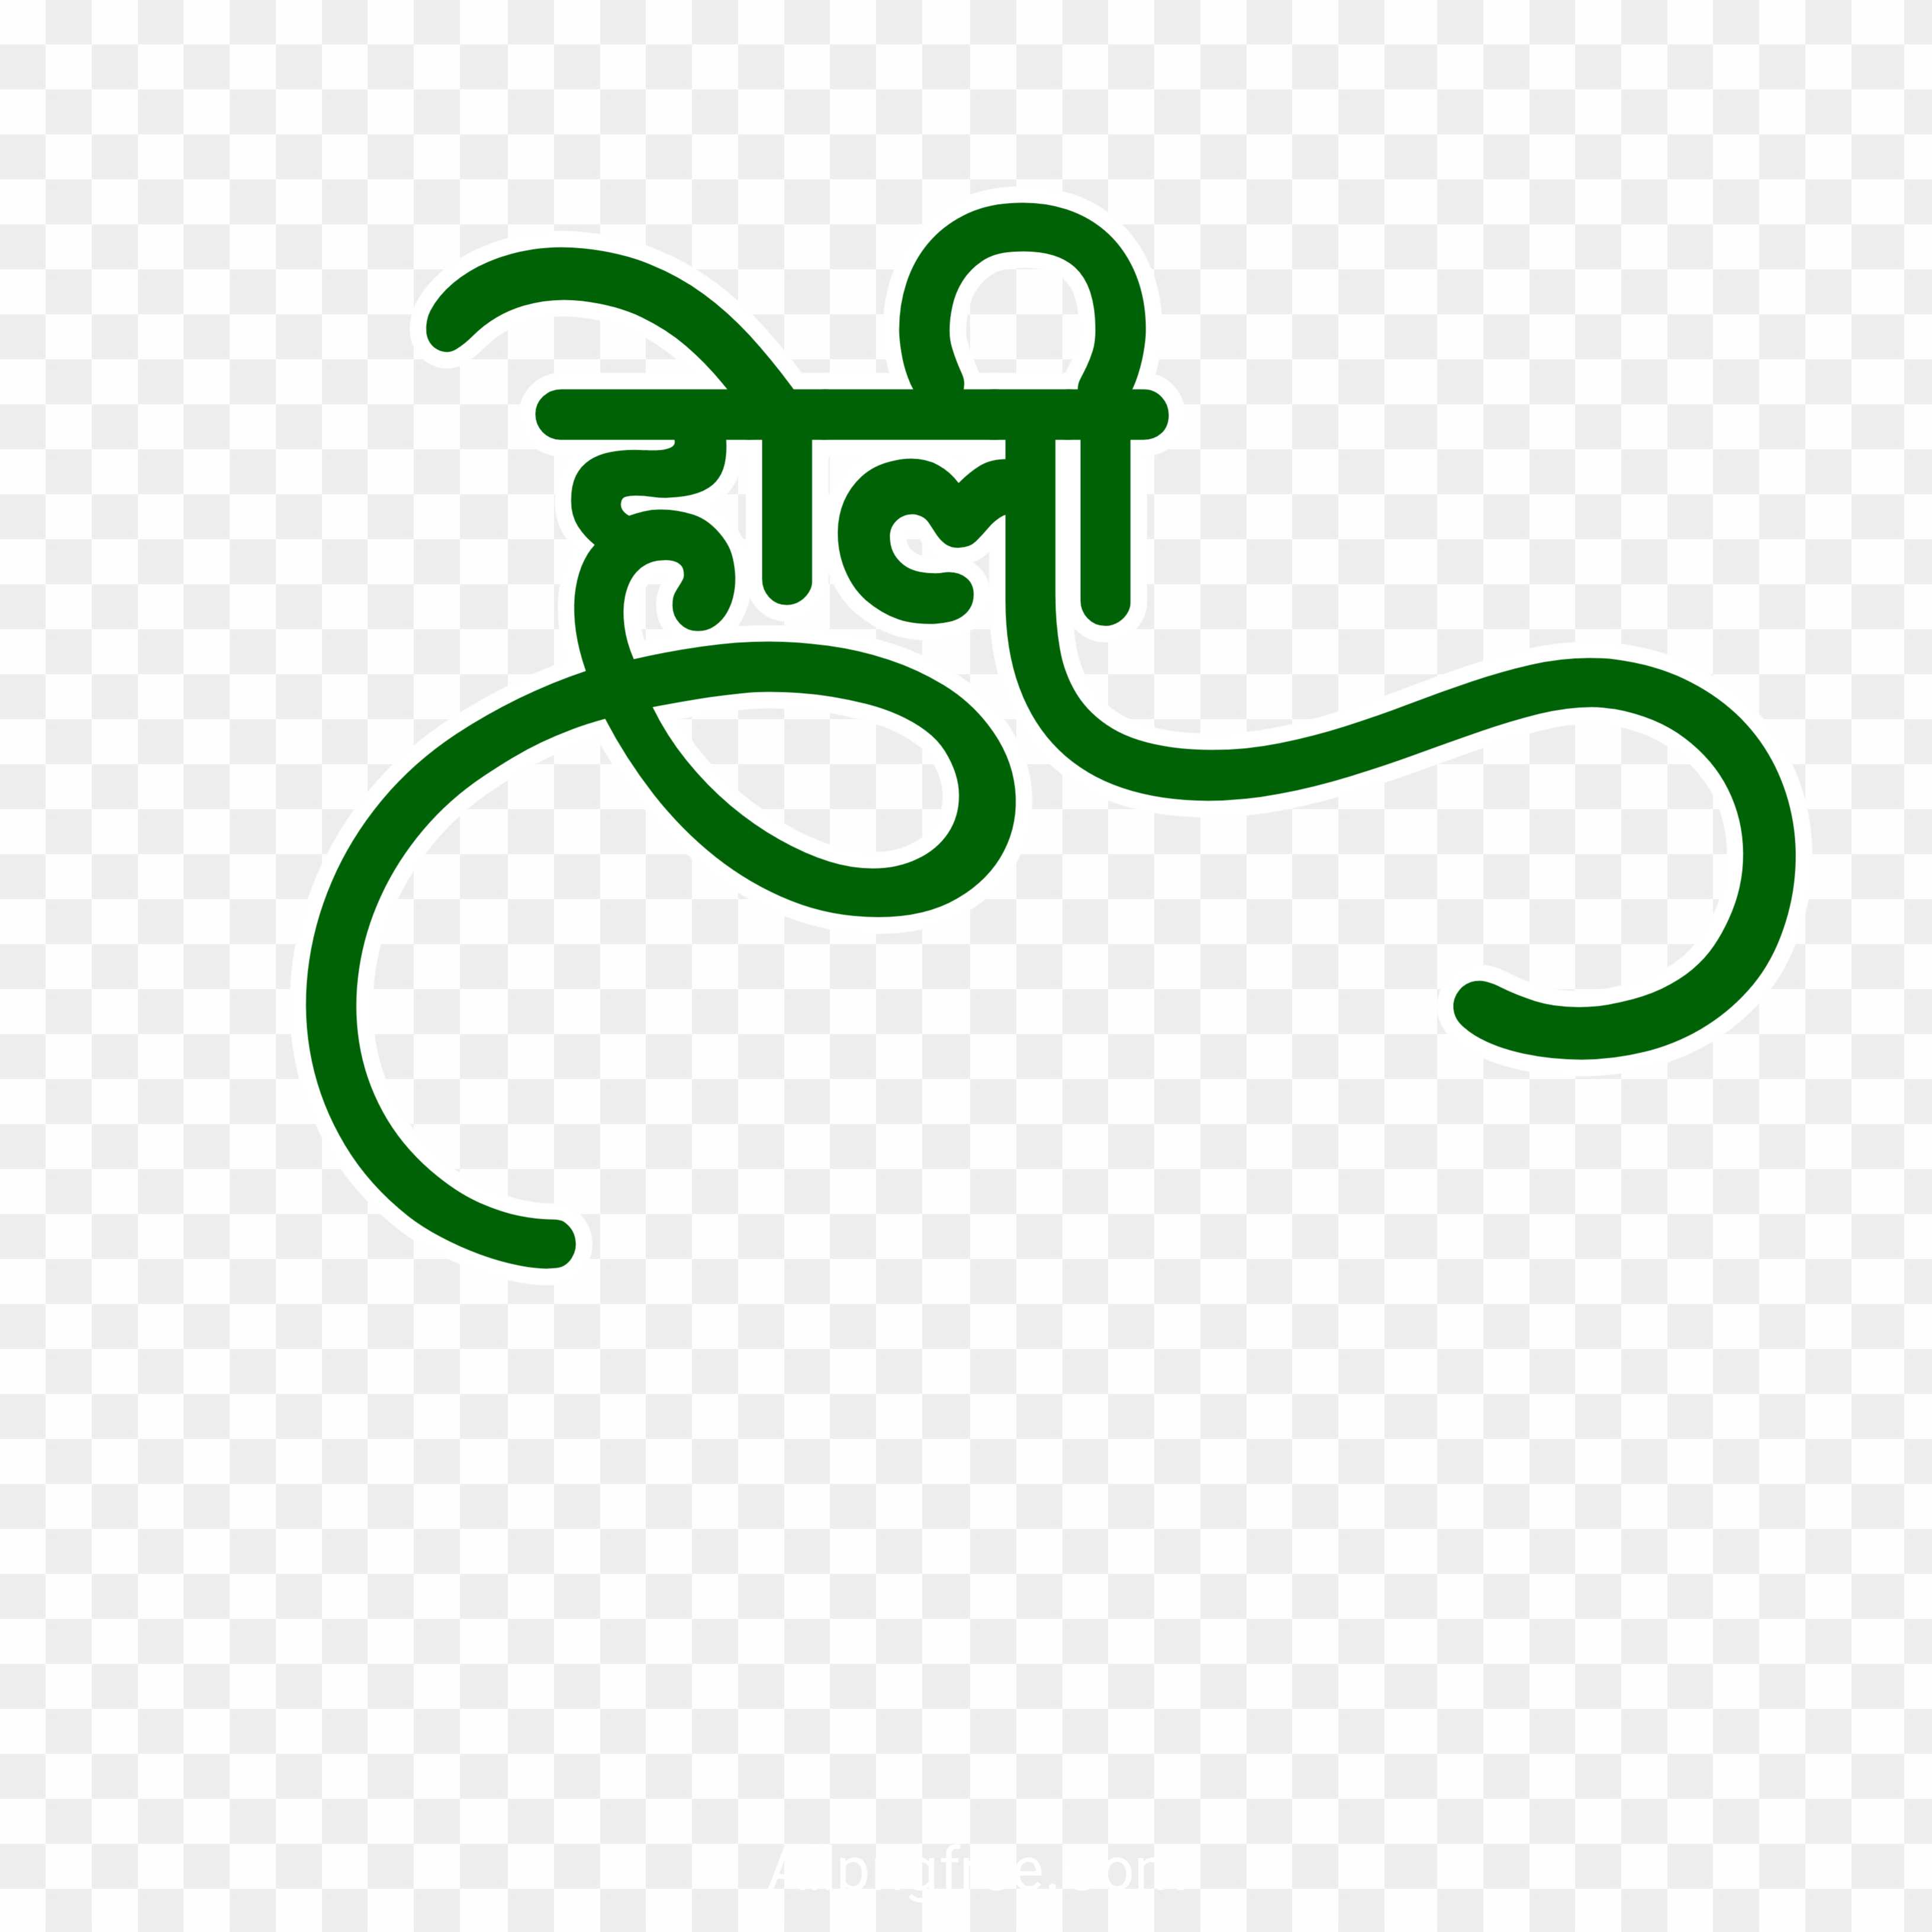 Holi Hindi text PNG images download 